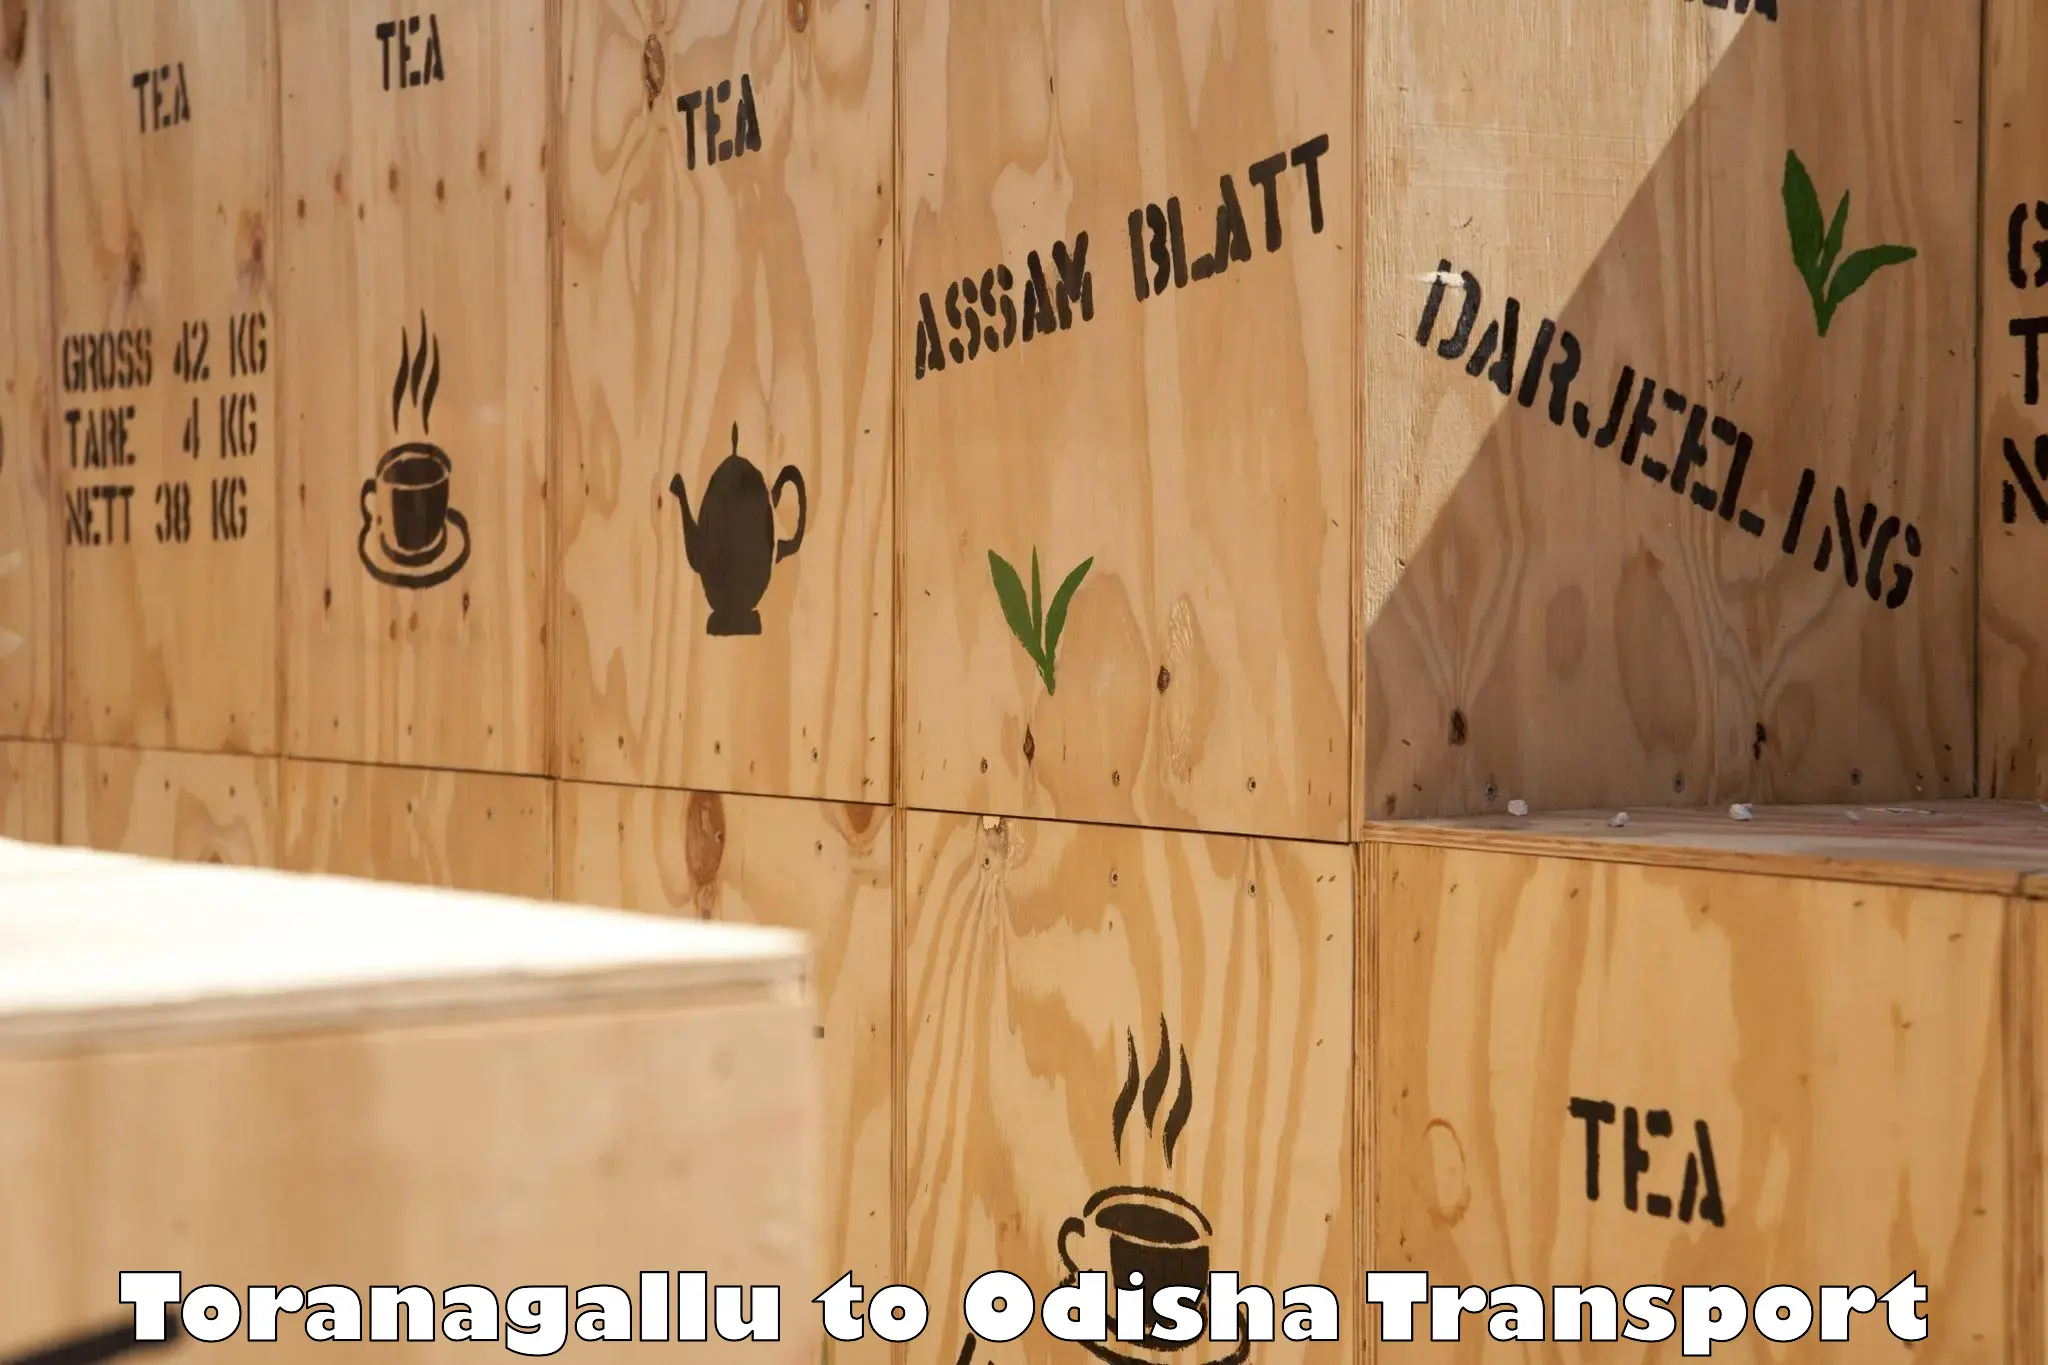 Container transportation services Toranagallu to Patkura